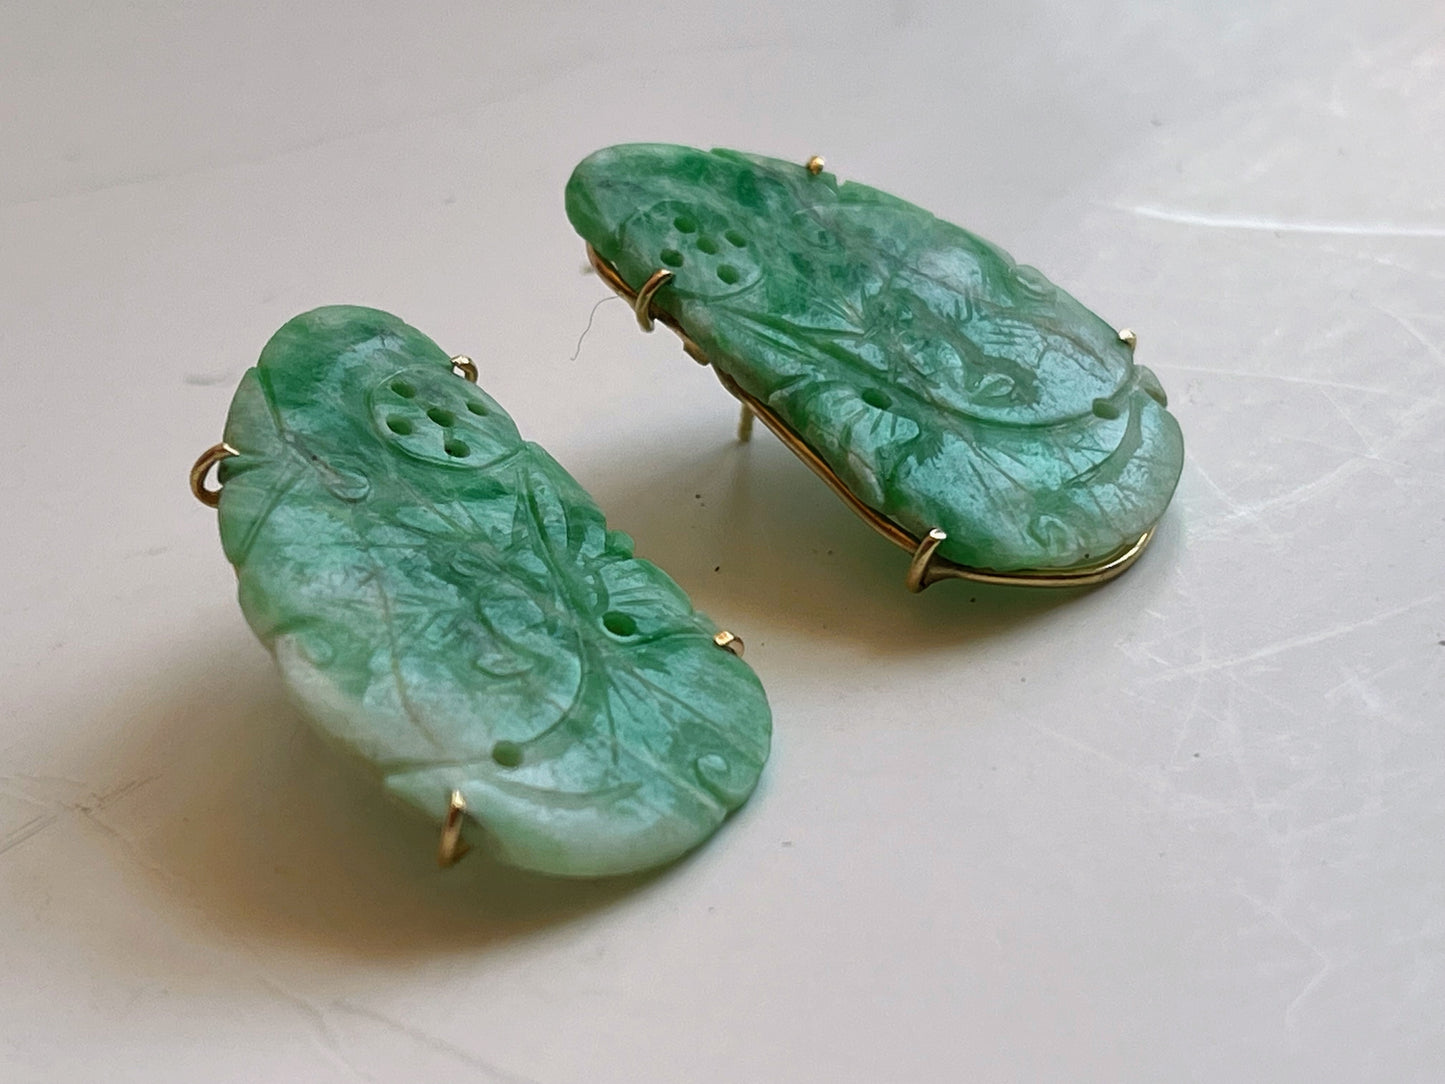 A pair of jade earrings in 14kt gold